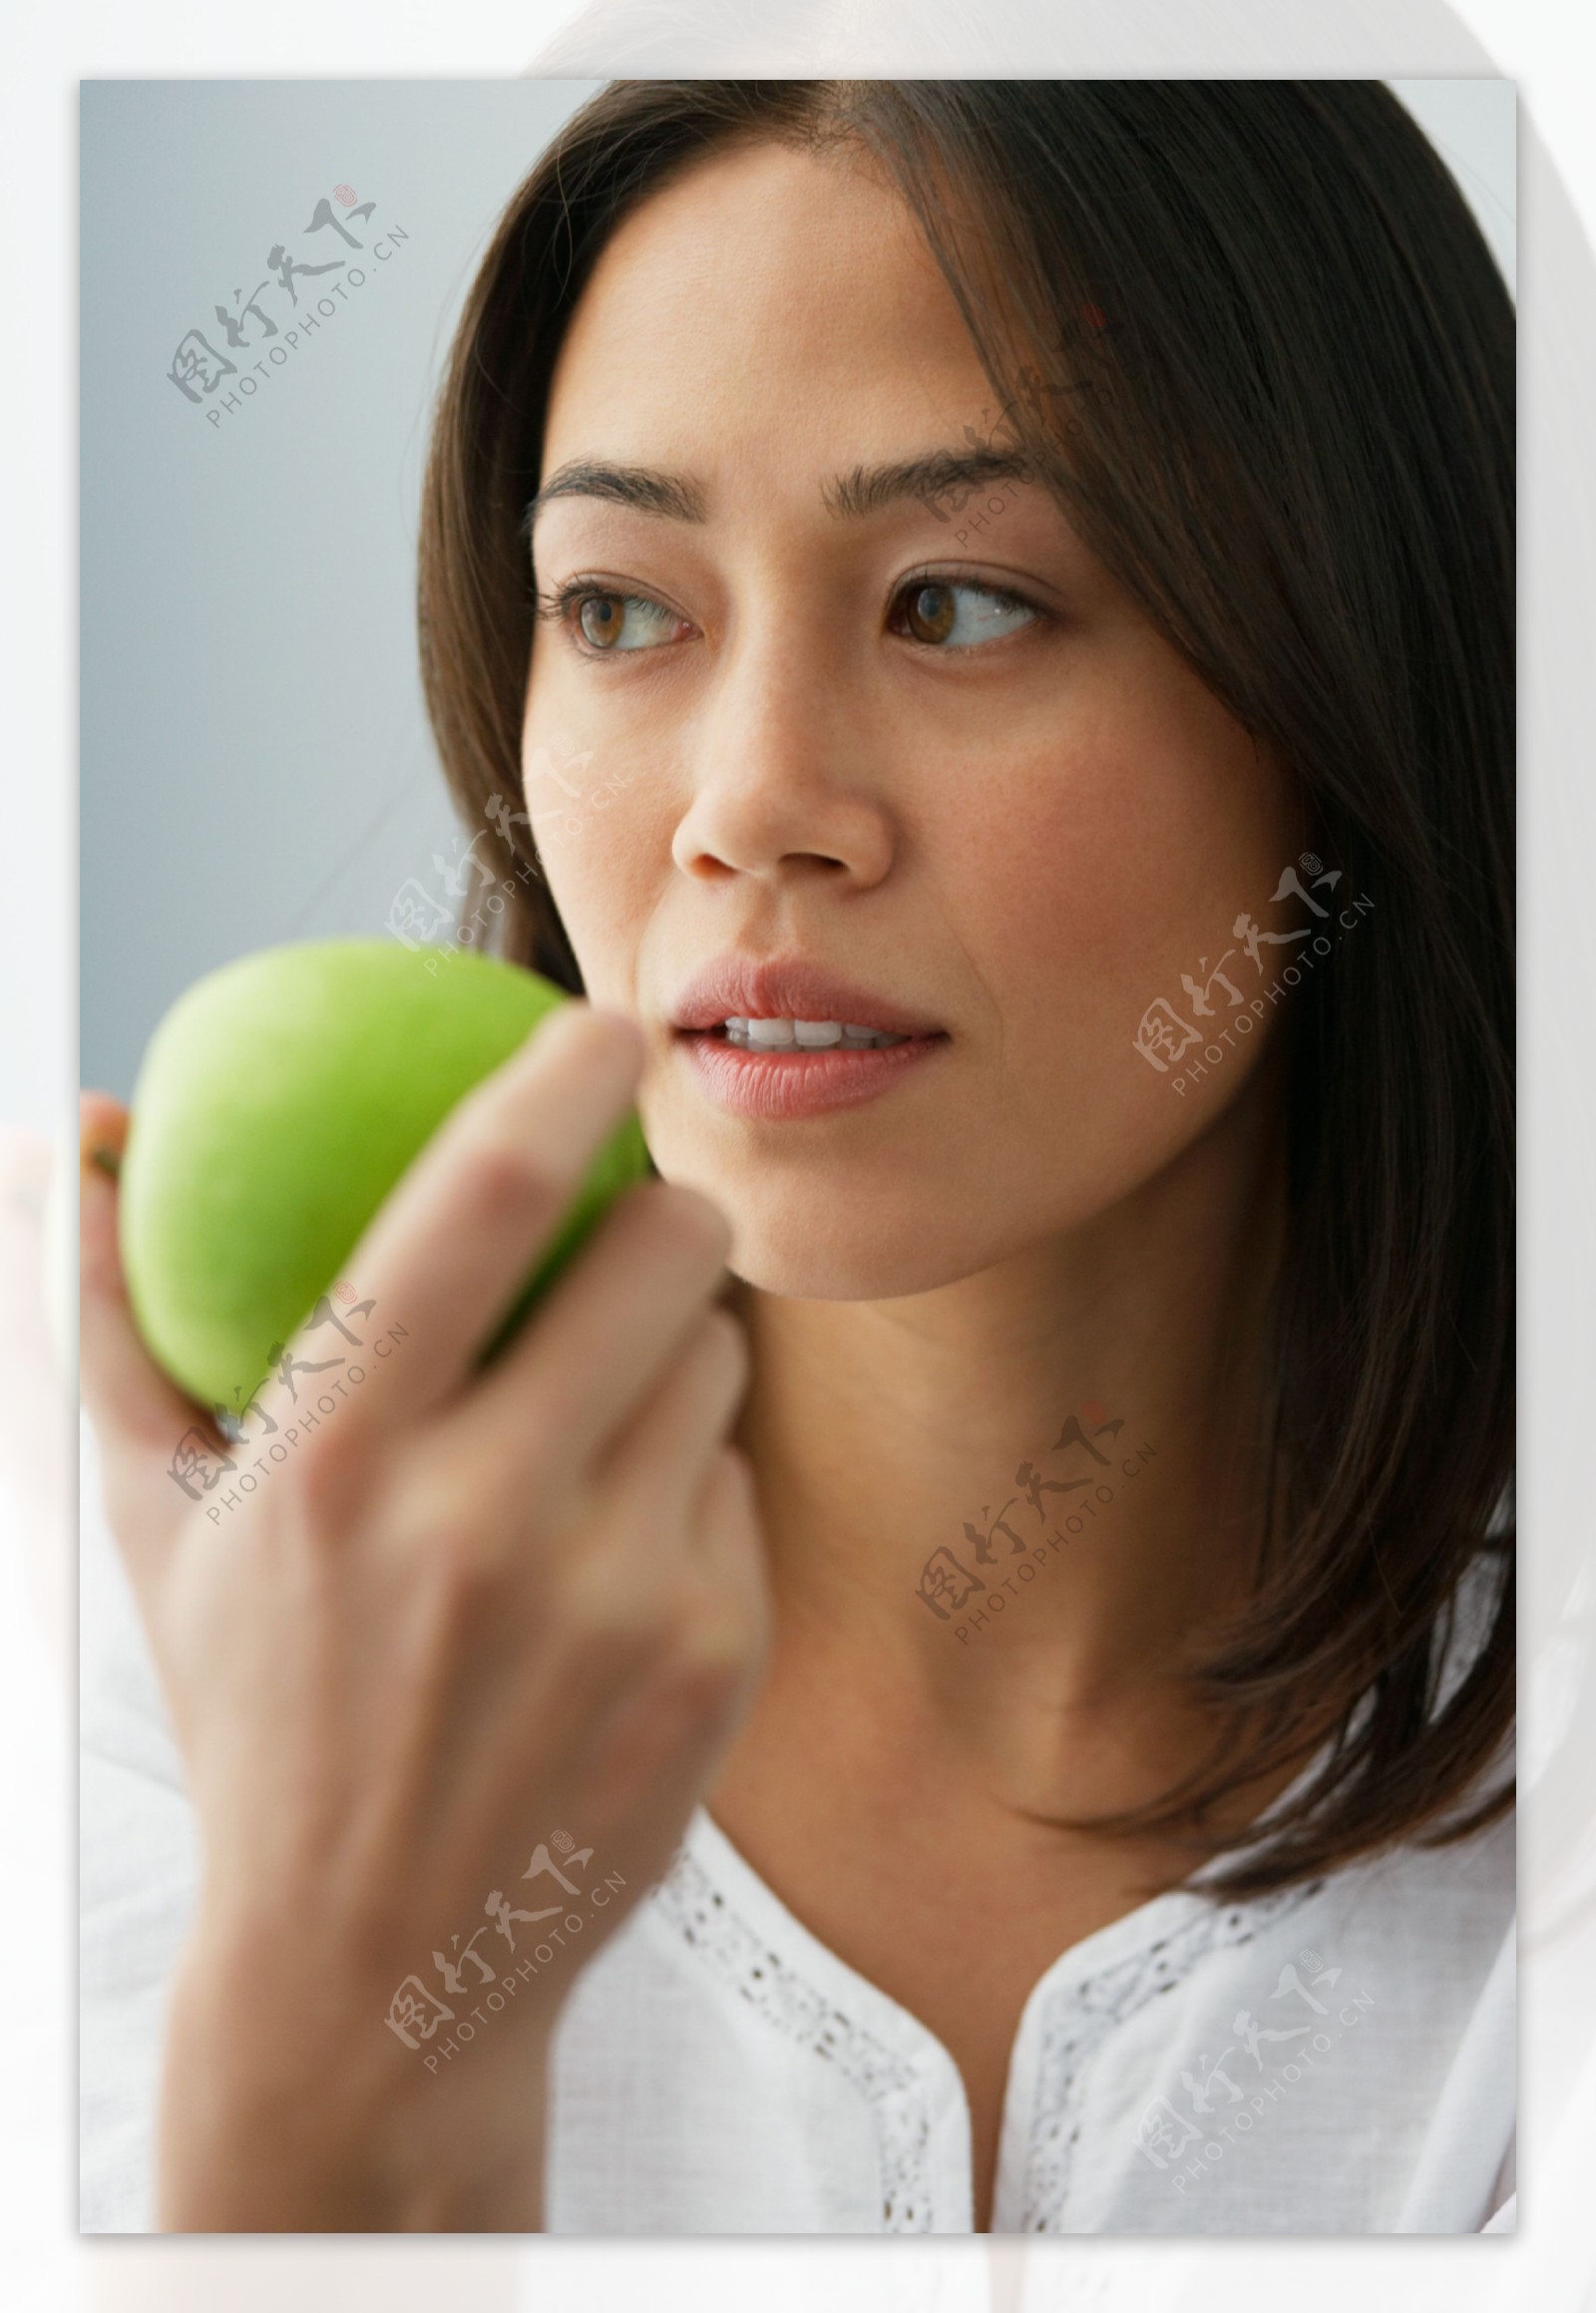 拿着苹果的女人图片